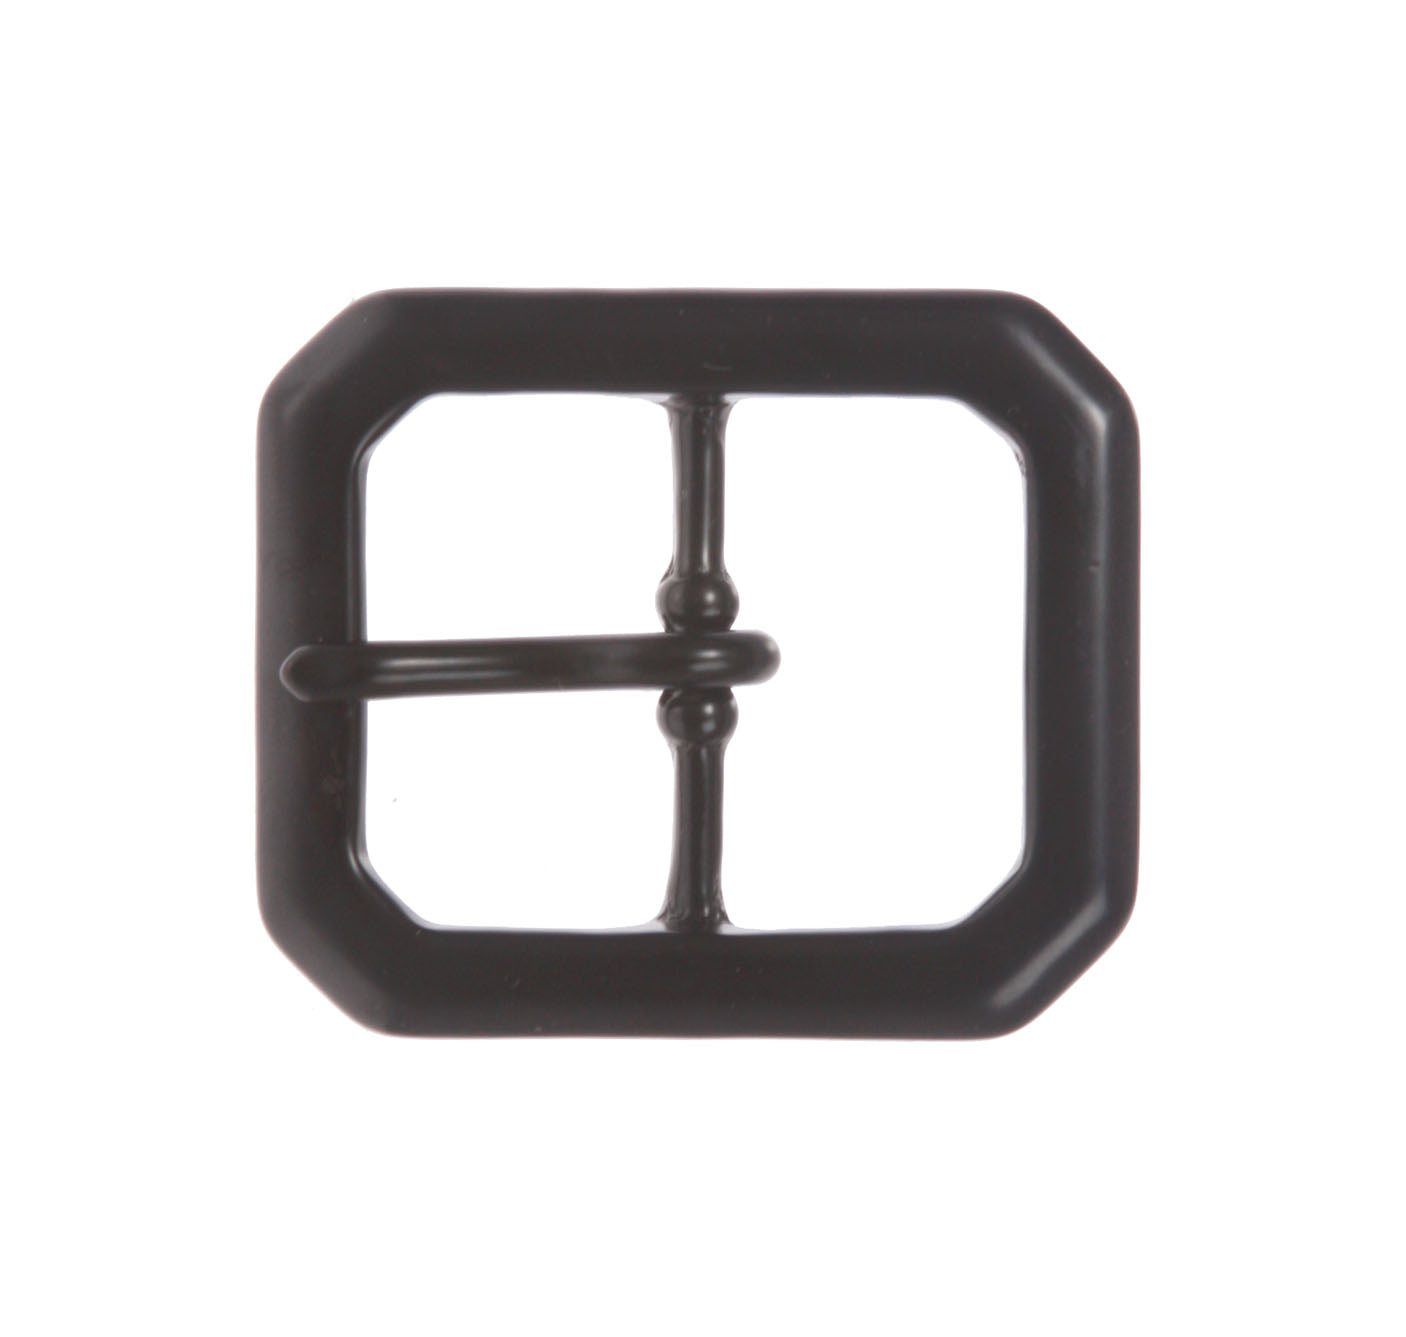 1 1/4 Inch Center Bar Single Prong Solid Brass Octagon Rectangular Belt Buckle